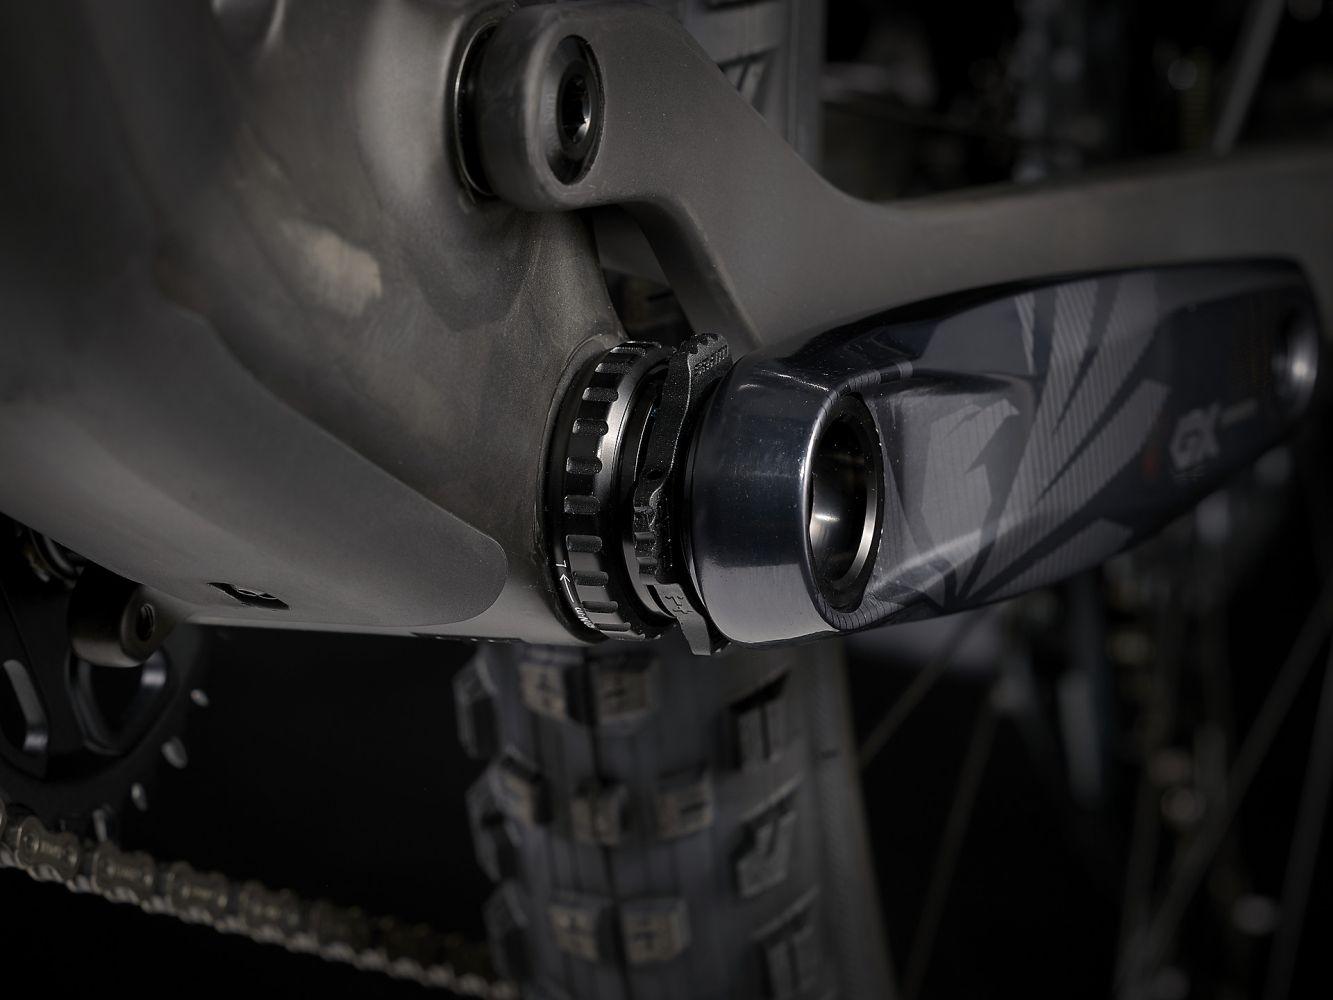 Trek Top Fuel 9.8 GX Matte Raw Carbon - Liquid-Life